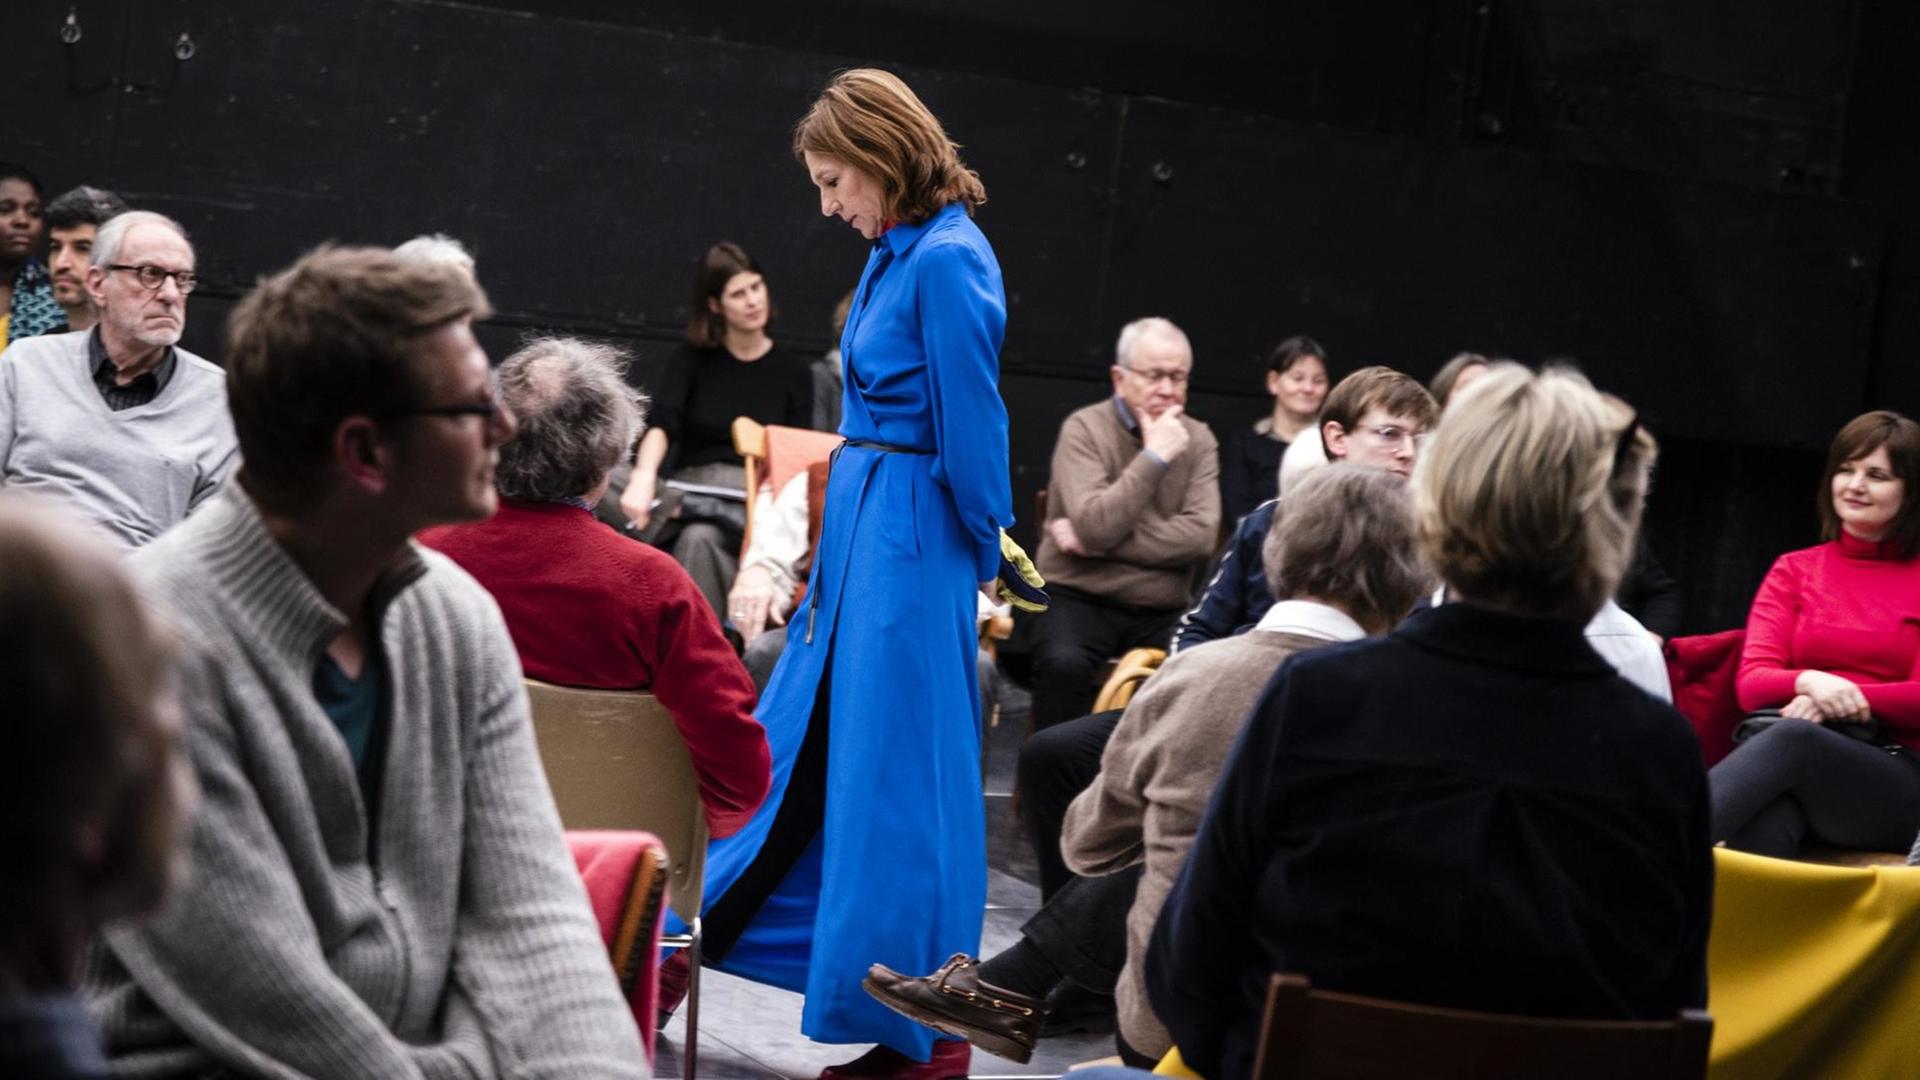 Die Schauspielerin Elsie de Brauw steht in einen langen blauen Mantel gekleidet in den Zuschauerreihen im Schauspielhaus Bochum. Ihr Kopf ist gesenkt.